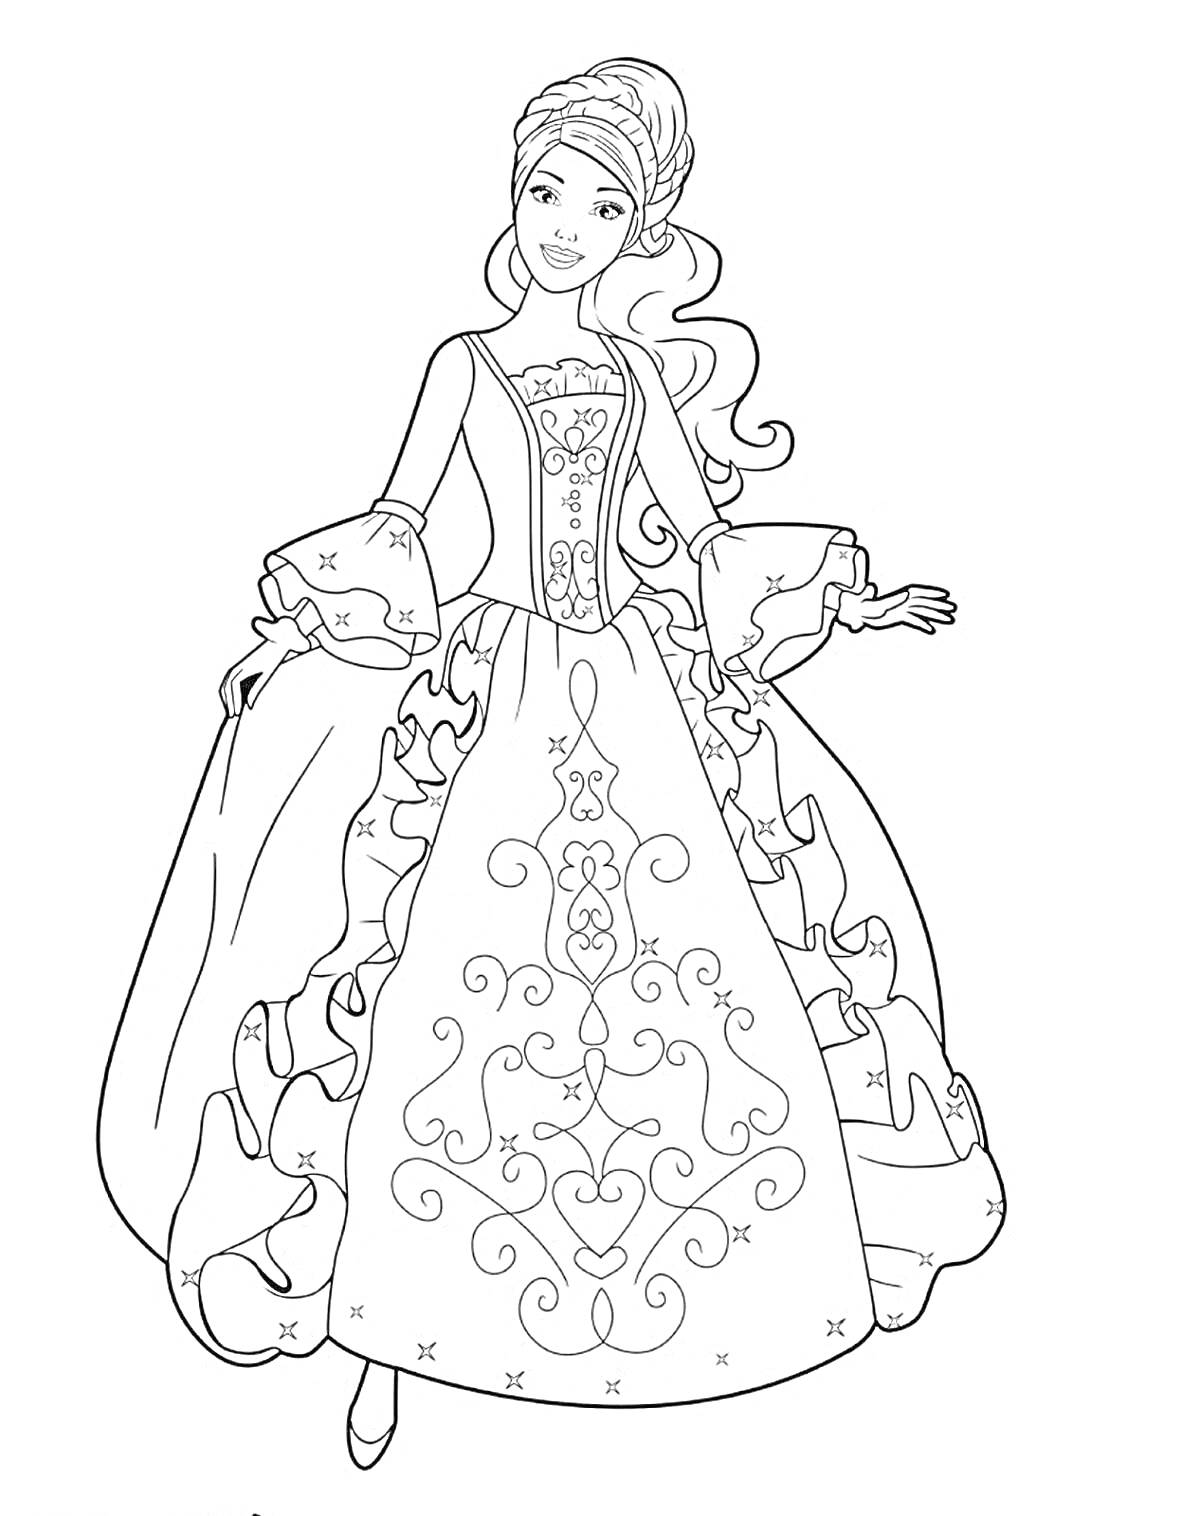 Раскраска Принцесса с распущенными волосами в пышном длинном платье с узорами.